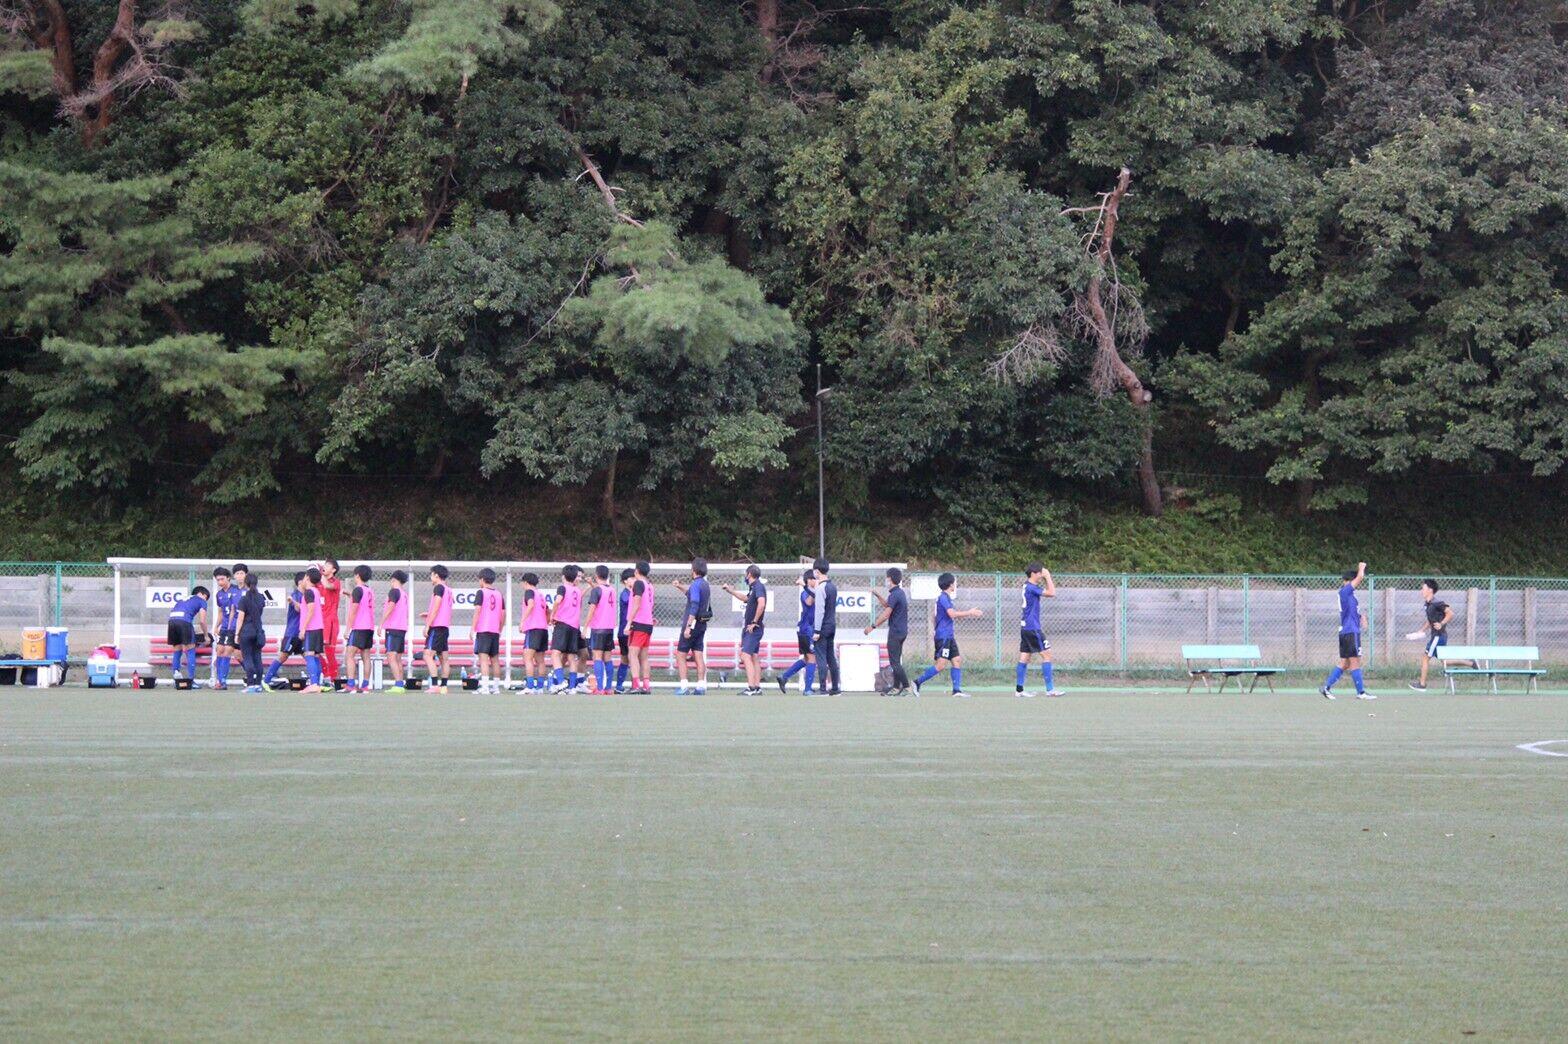 https://football.ku-sports.jp/blog/photoreport/images/ea44662b62d6825721062c63381137d60d6e0a16.jpg